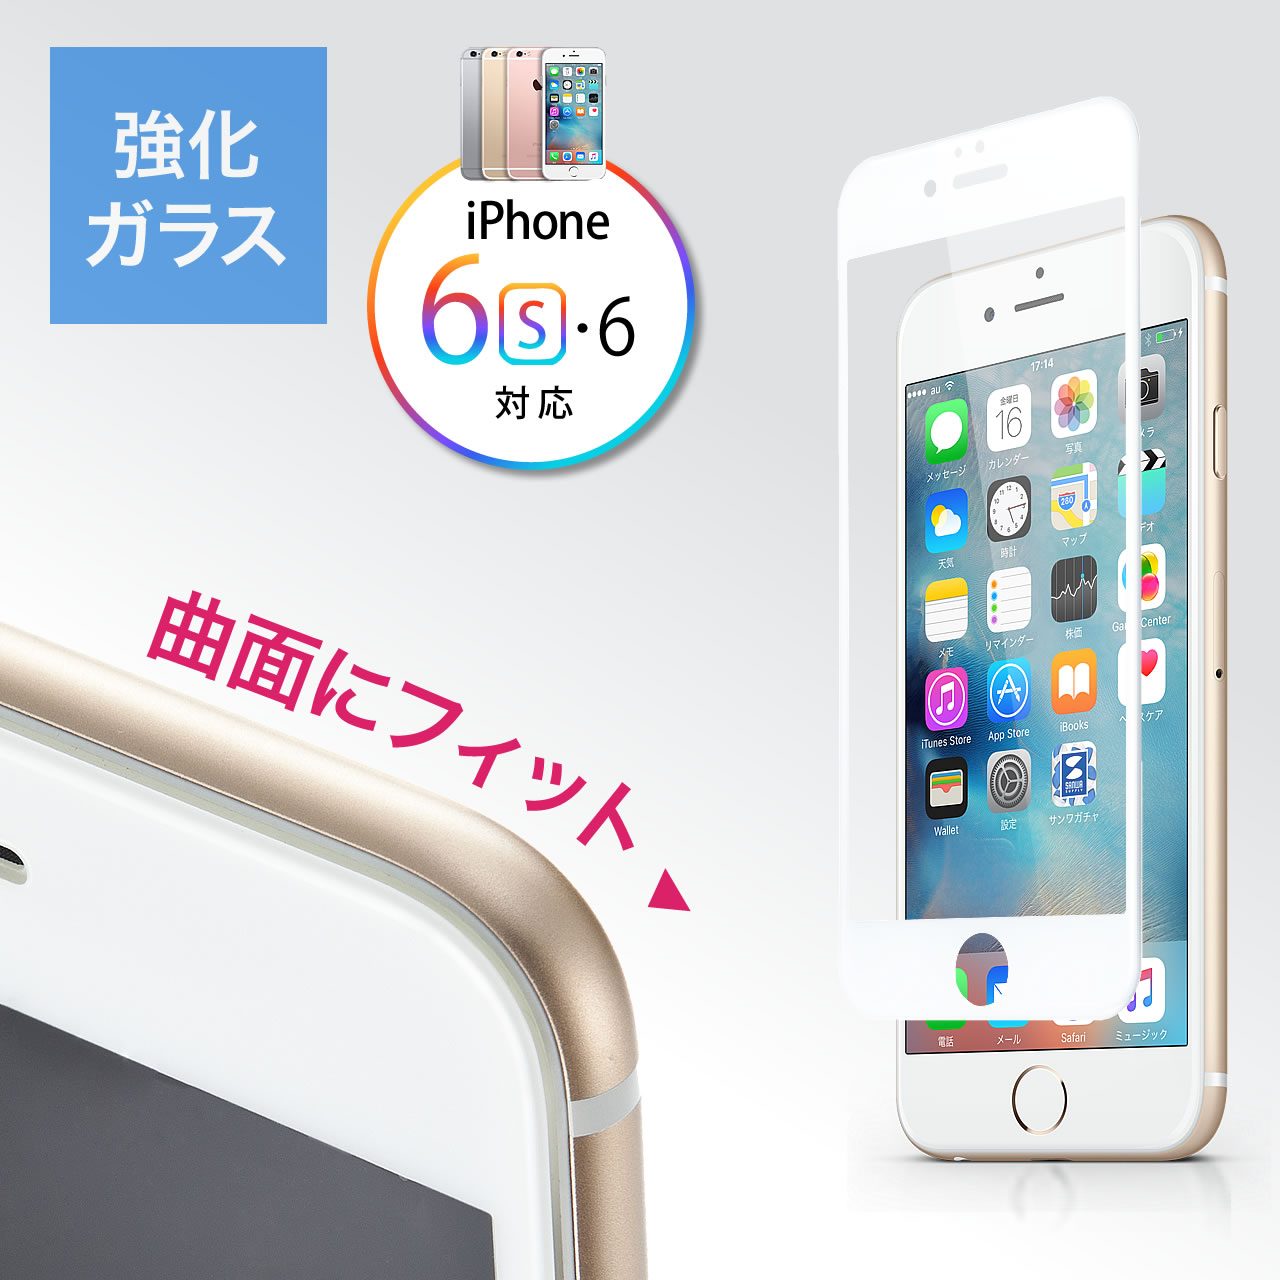 Iphone 6s 6液晶保護強化ガラスフィルム 旭硝子製 3d Touch Touch Id対応 硬度9h ラウンド形状 ホワイト 0 Lcd026wの販売商品 通販ならサンワダイレクト